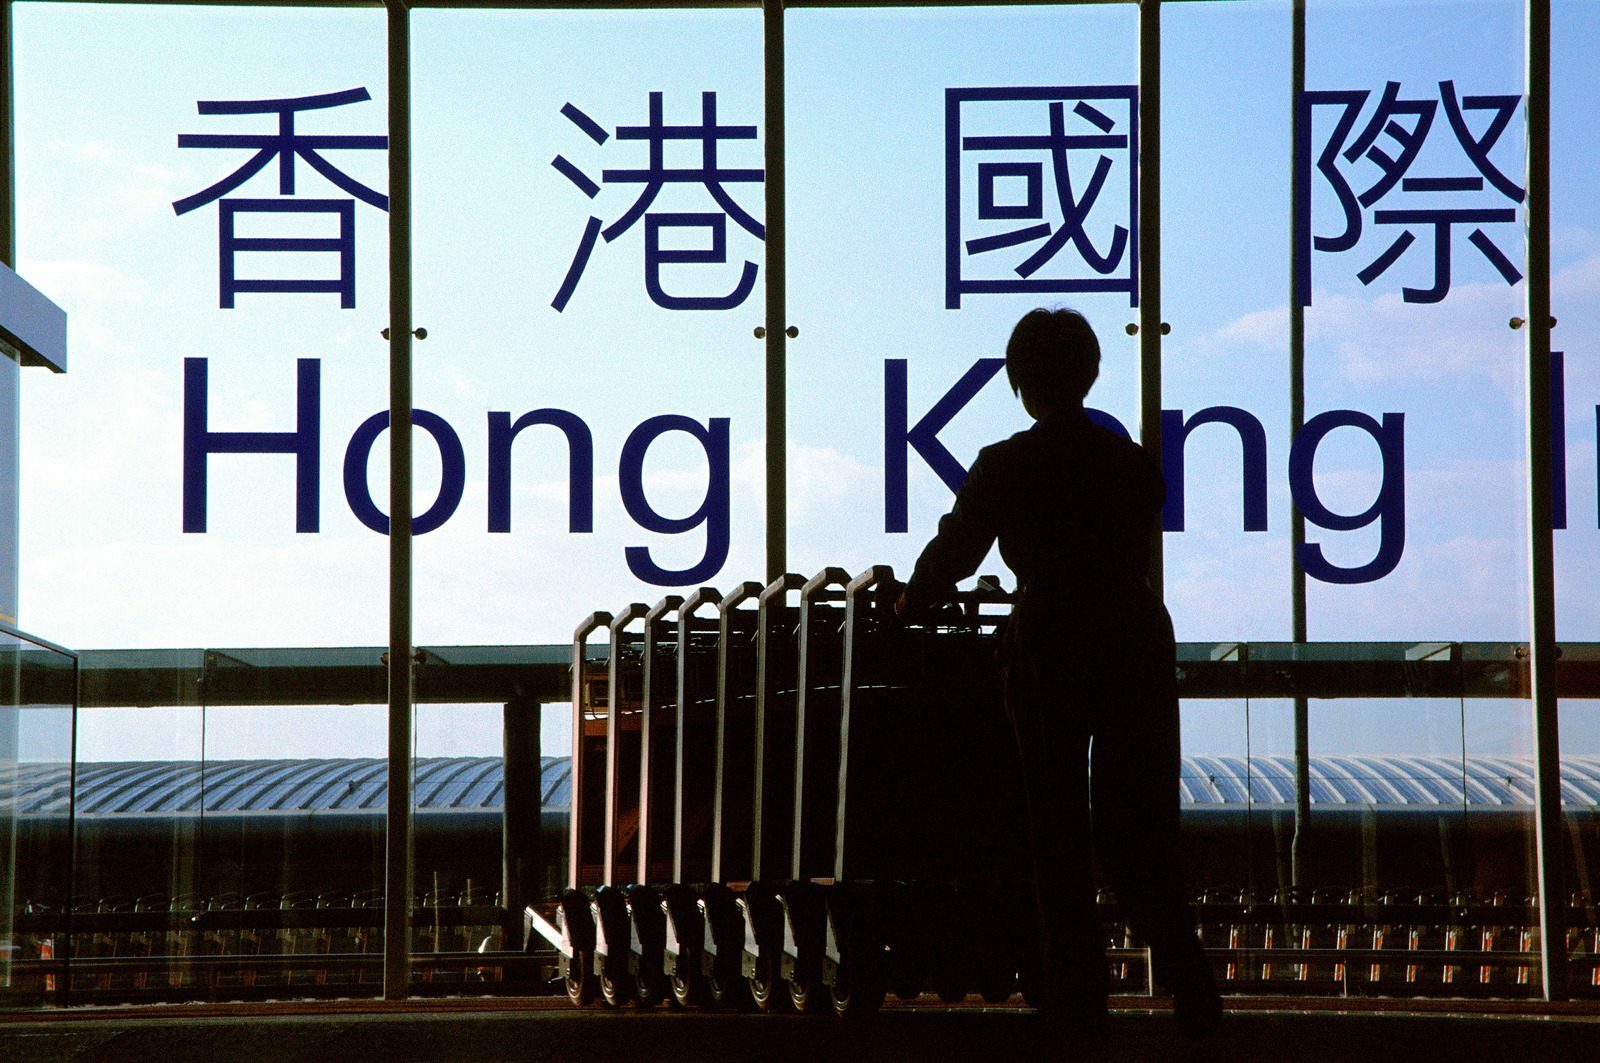 De nouvelles règles menacent d’expulsion les demandeurs d’asile à Hong Kong